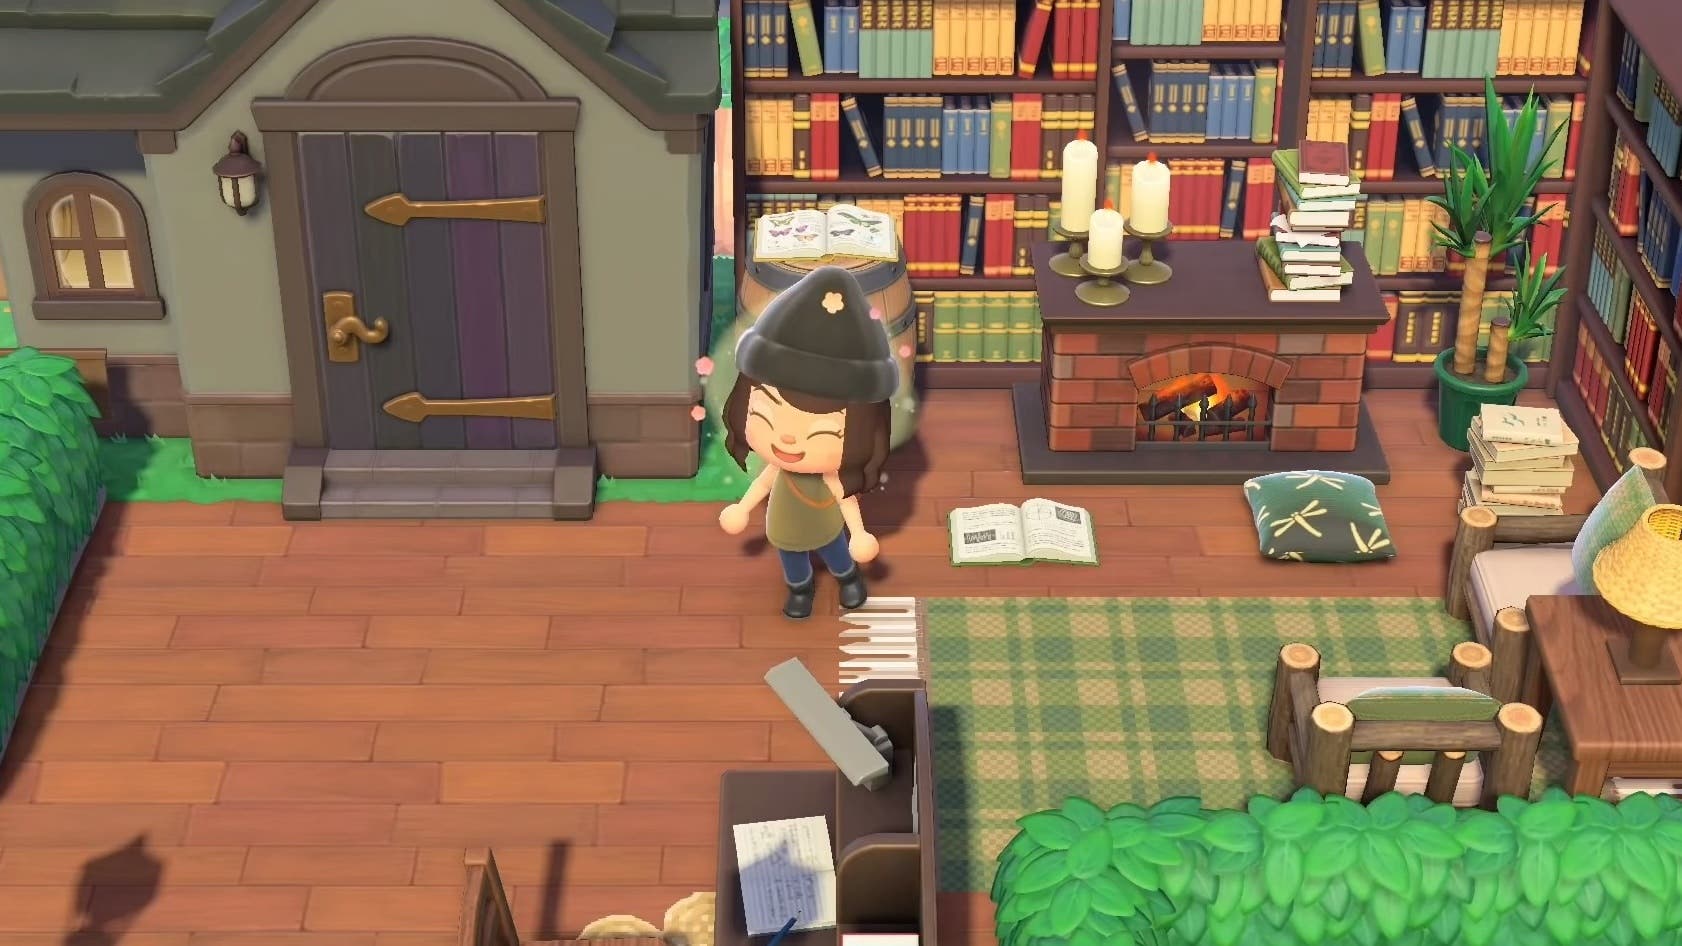 Vídeo nos muestra ideas para una librería al aire libre en Animal Crossing: New Horizons